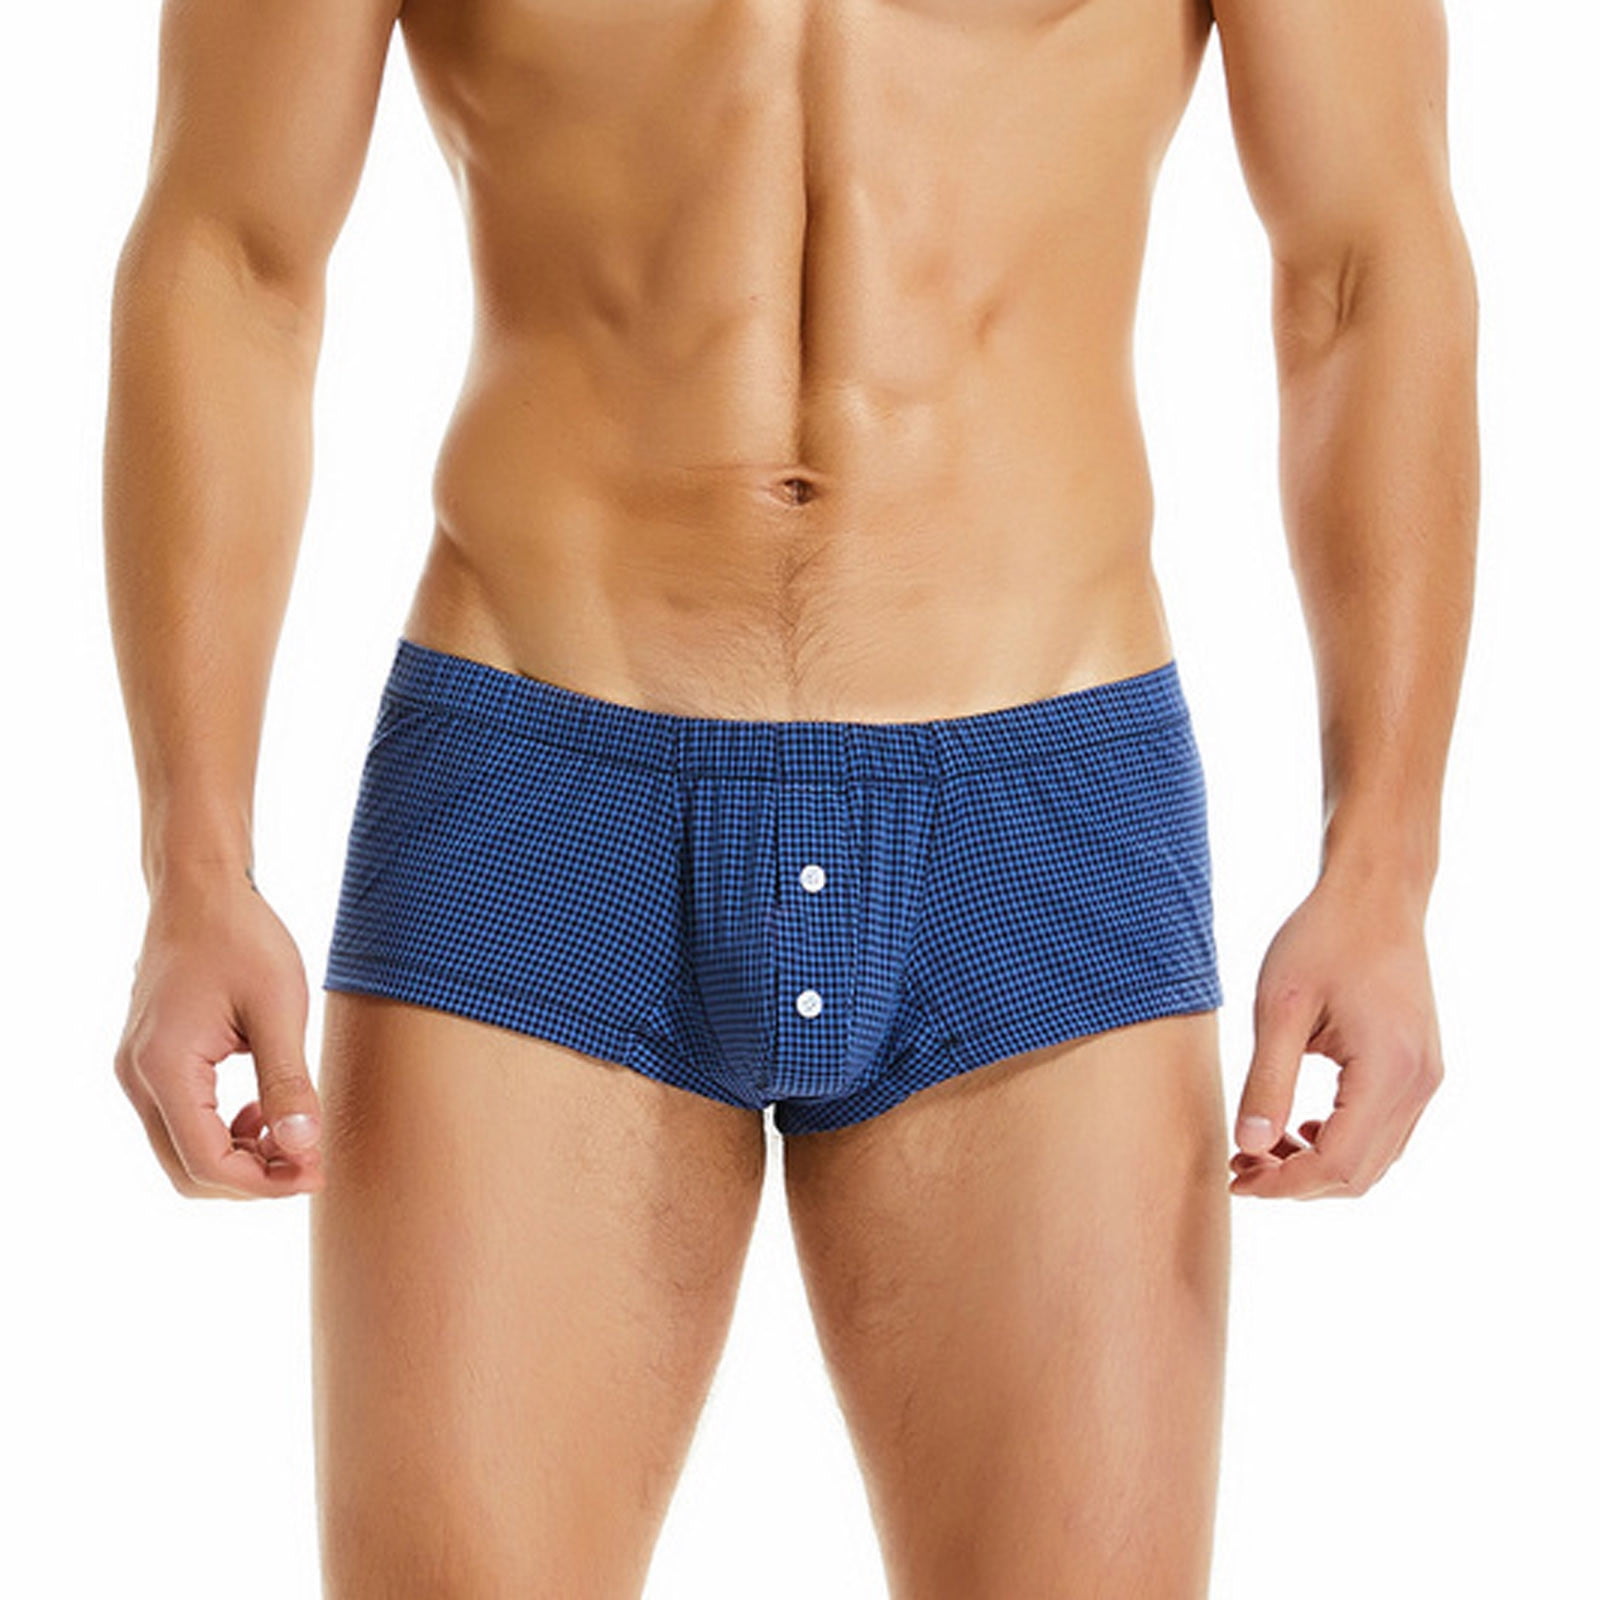 TIHLMKi Men's Underwear Deals Clearance Under $10 Men Casual Plaid